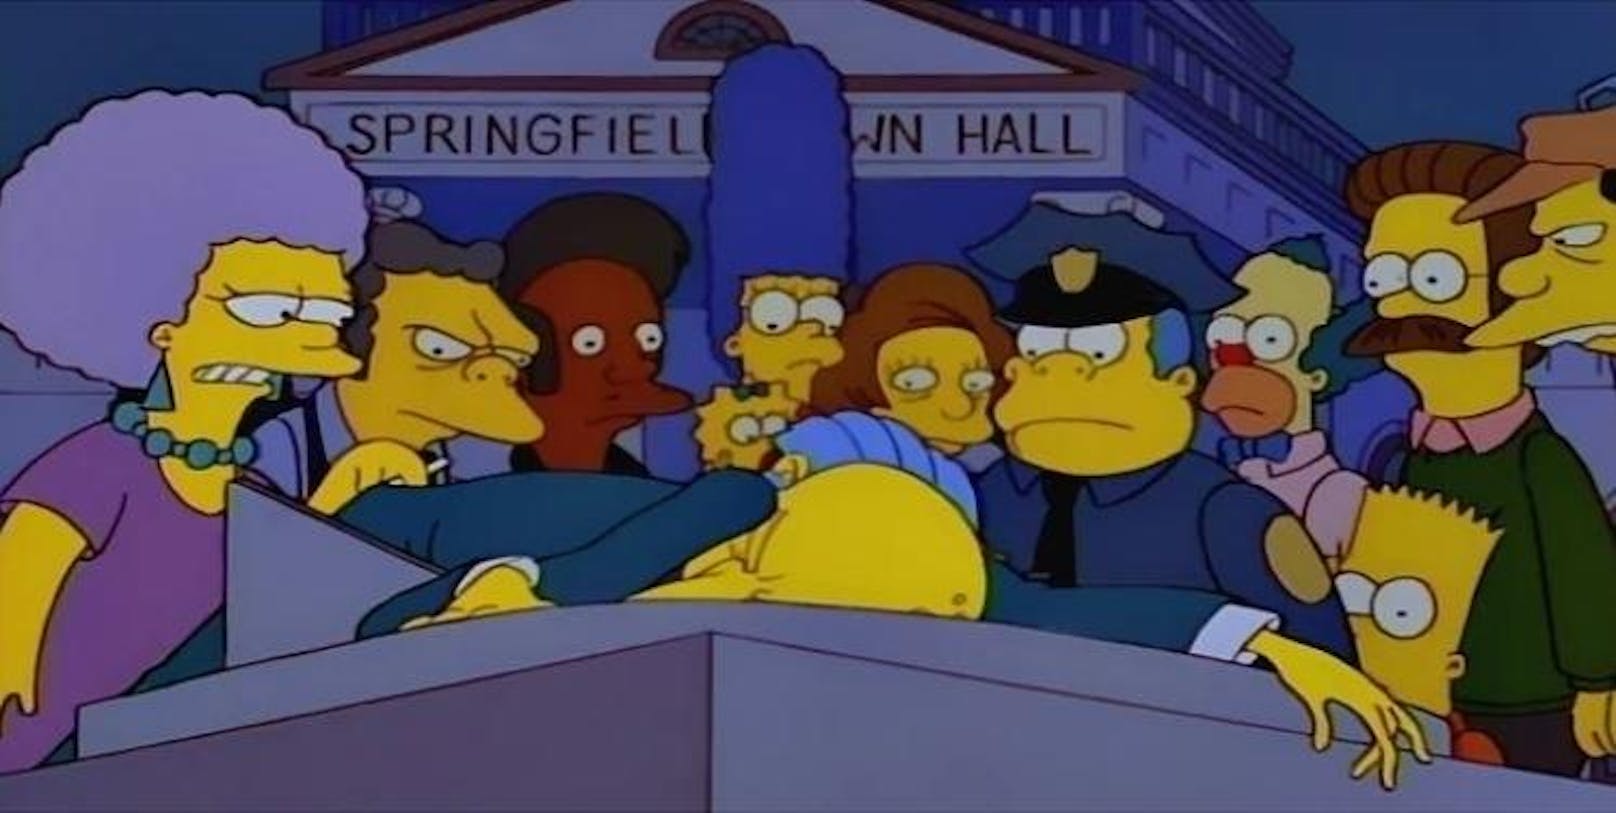 3. Wer erschoss Mr. Burns (Teil 1) (S6E25) <a href="https://en.wikipedia.org/wiki/Who_Shot_Mr._Burns%3F#Part_One">Episodeninhalt</a>